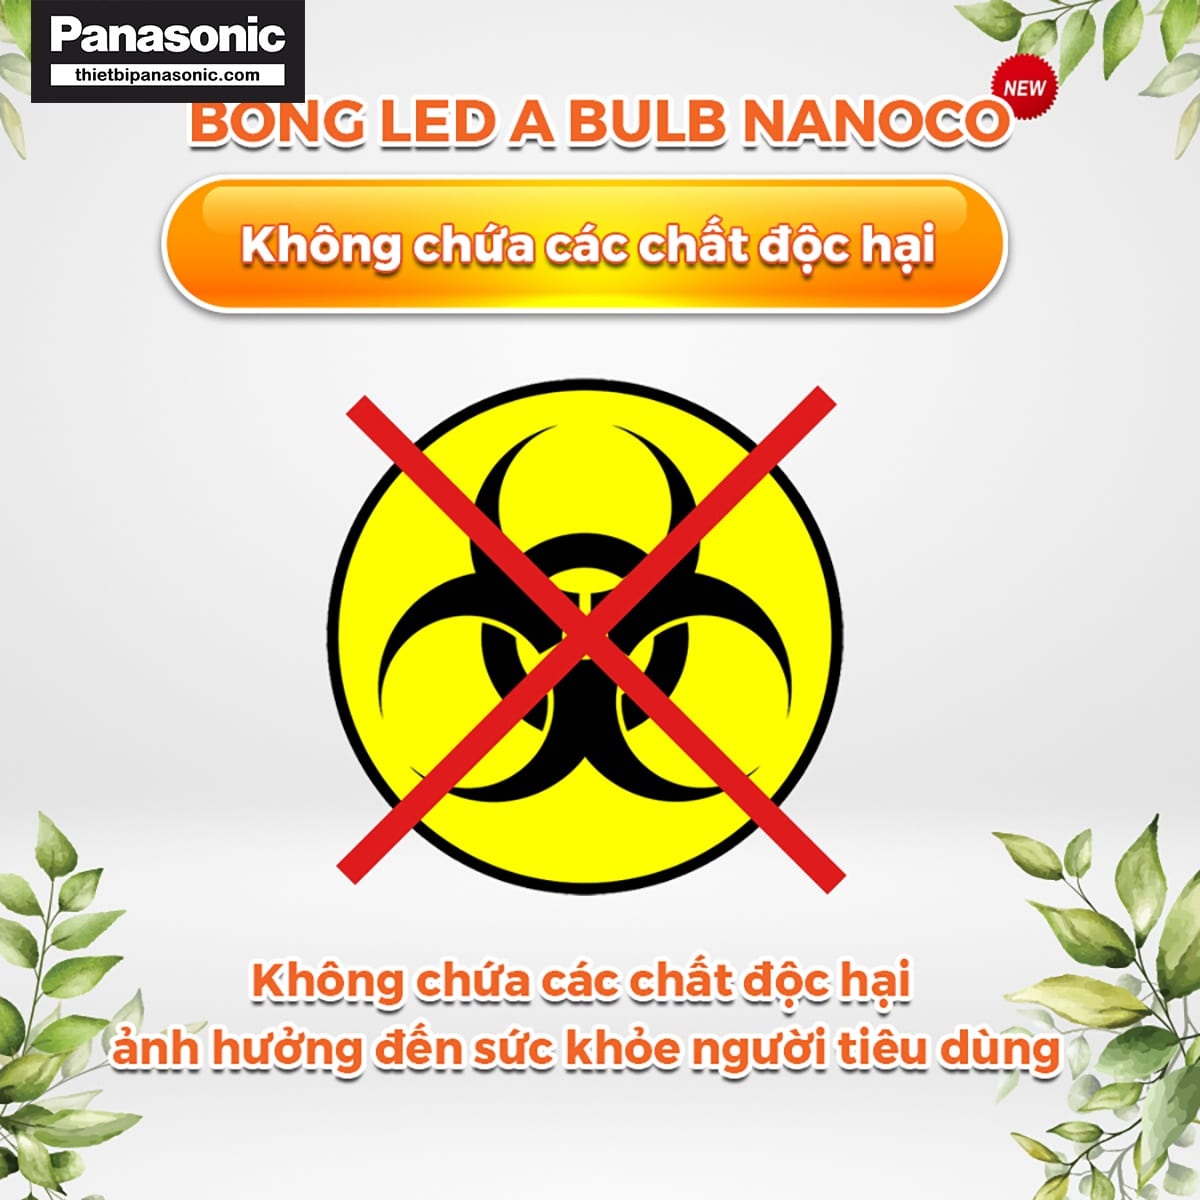 Bóng đèn bulb 50W Nanoco NLBT506, NLBT503 không chứa các chất độc hại ảnh hưởng xấu tới sức khỏe